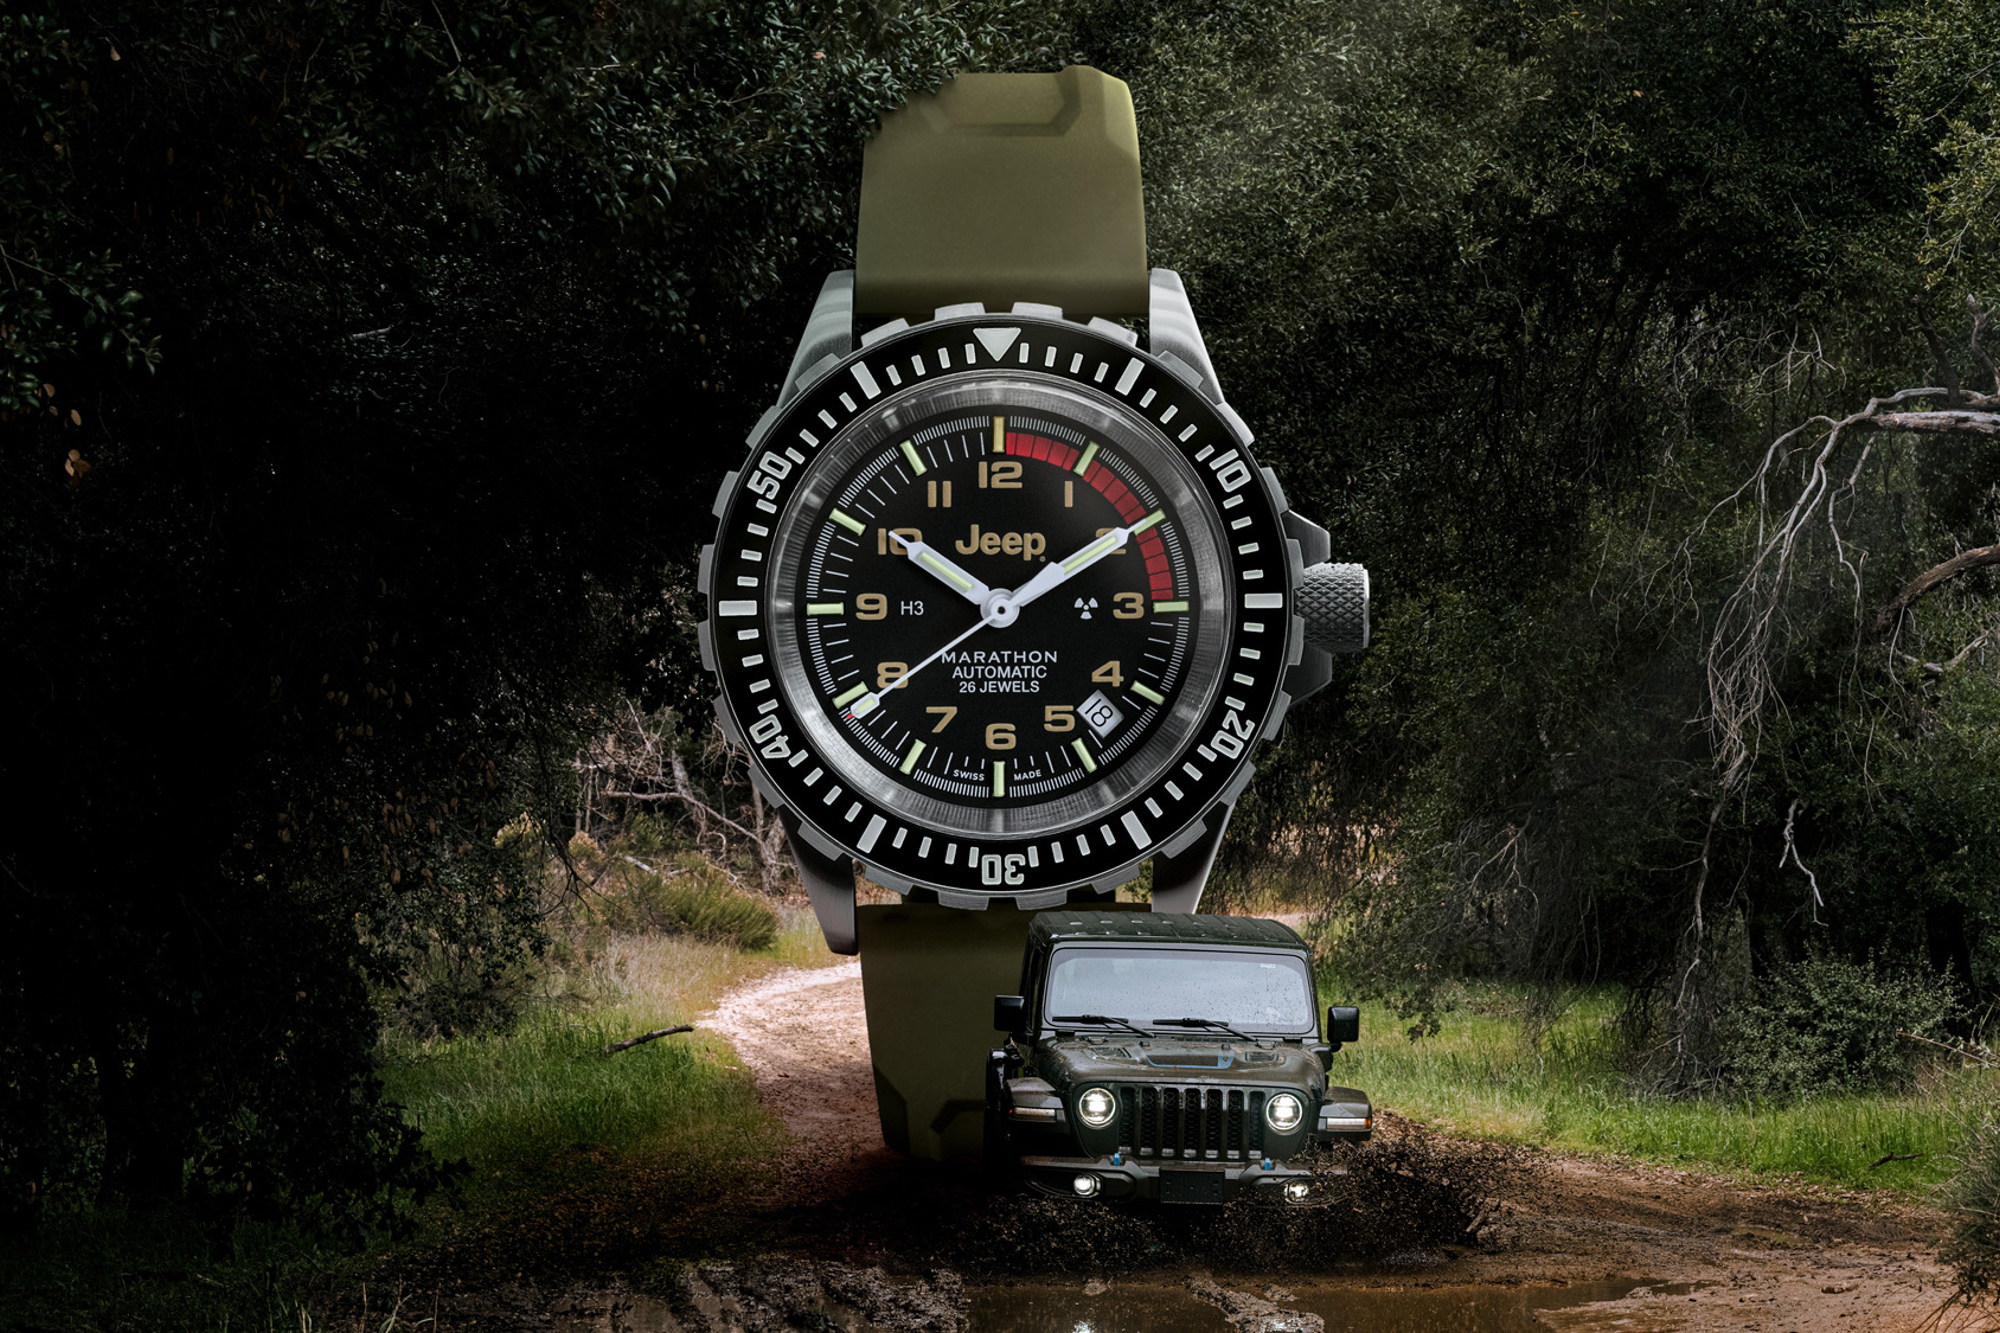 Imagen de lanzamiento de la colección Jeep y Marathon Watch con un reloj en el centro y un Jeep conduciendo por un camino de tierra embarrado.